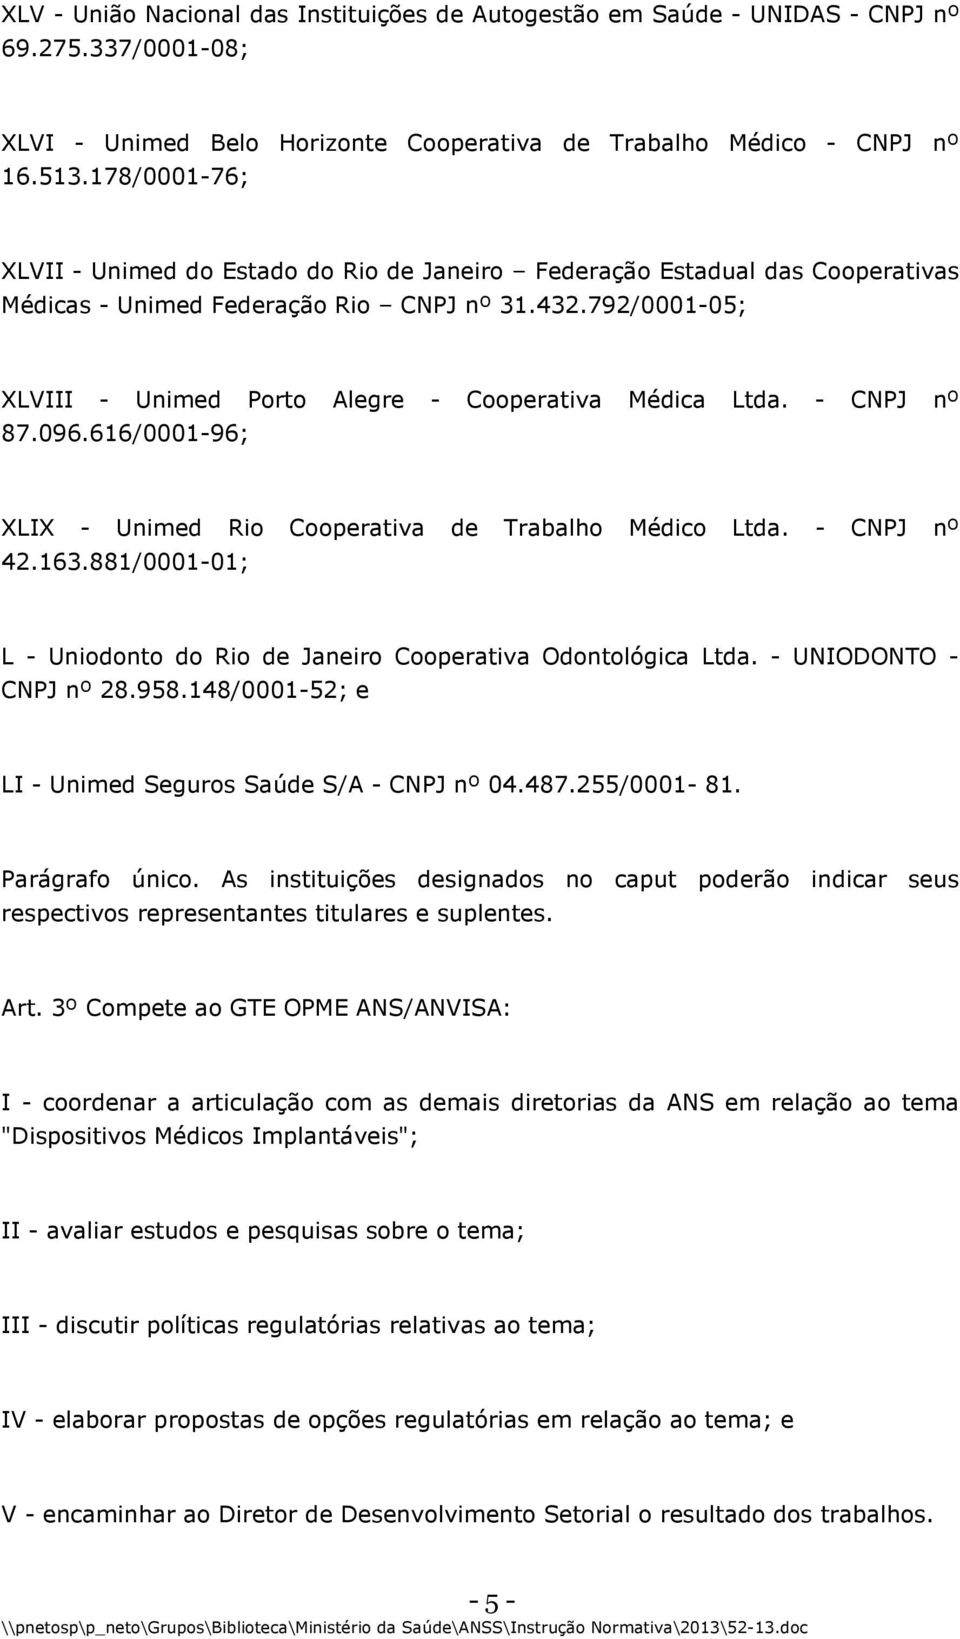 792/0001-05; XLVIII - Unimed Porto Alegre - Cooperativa Médica Ltda. - CNPJ nº 87.096.616/0001-96; XLIX - Unimed Rio Cooperativa de Trabalho Médico Ltda. - CNPJ nº 42.163.